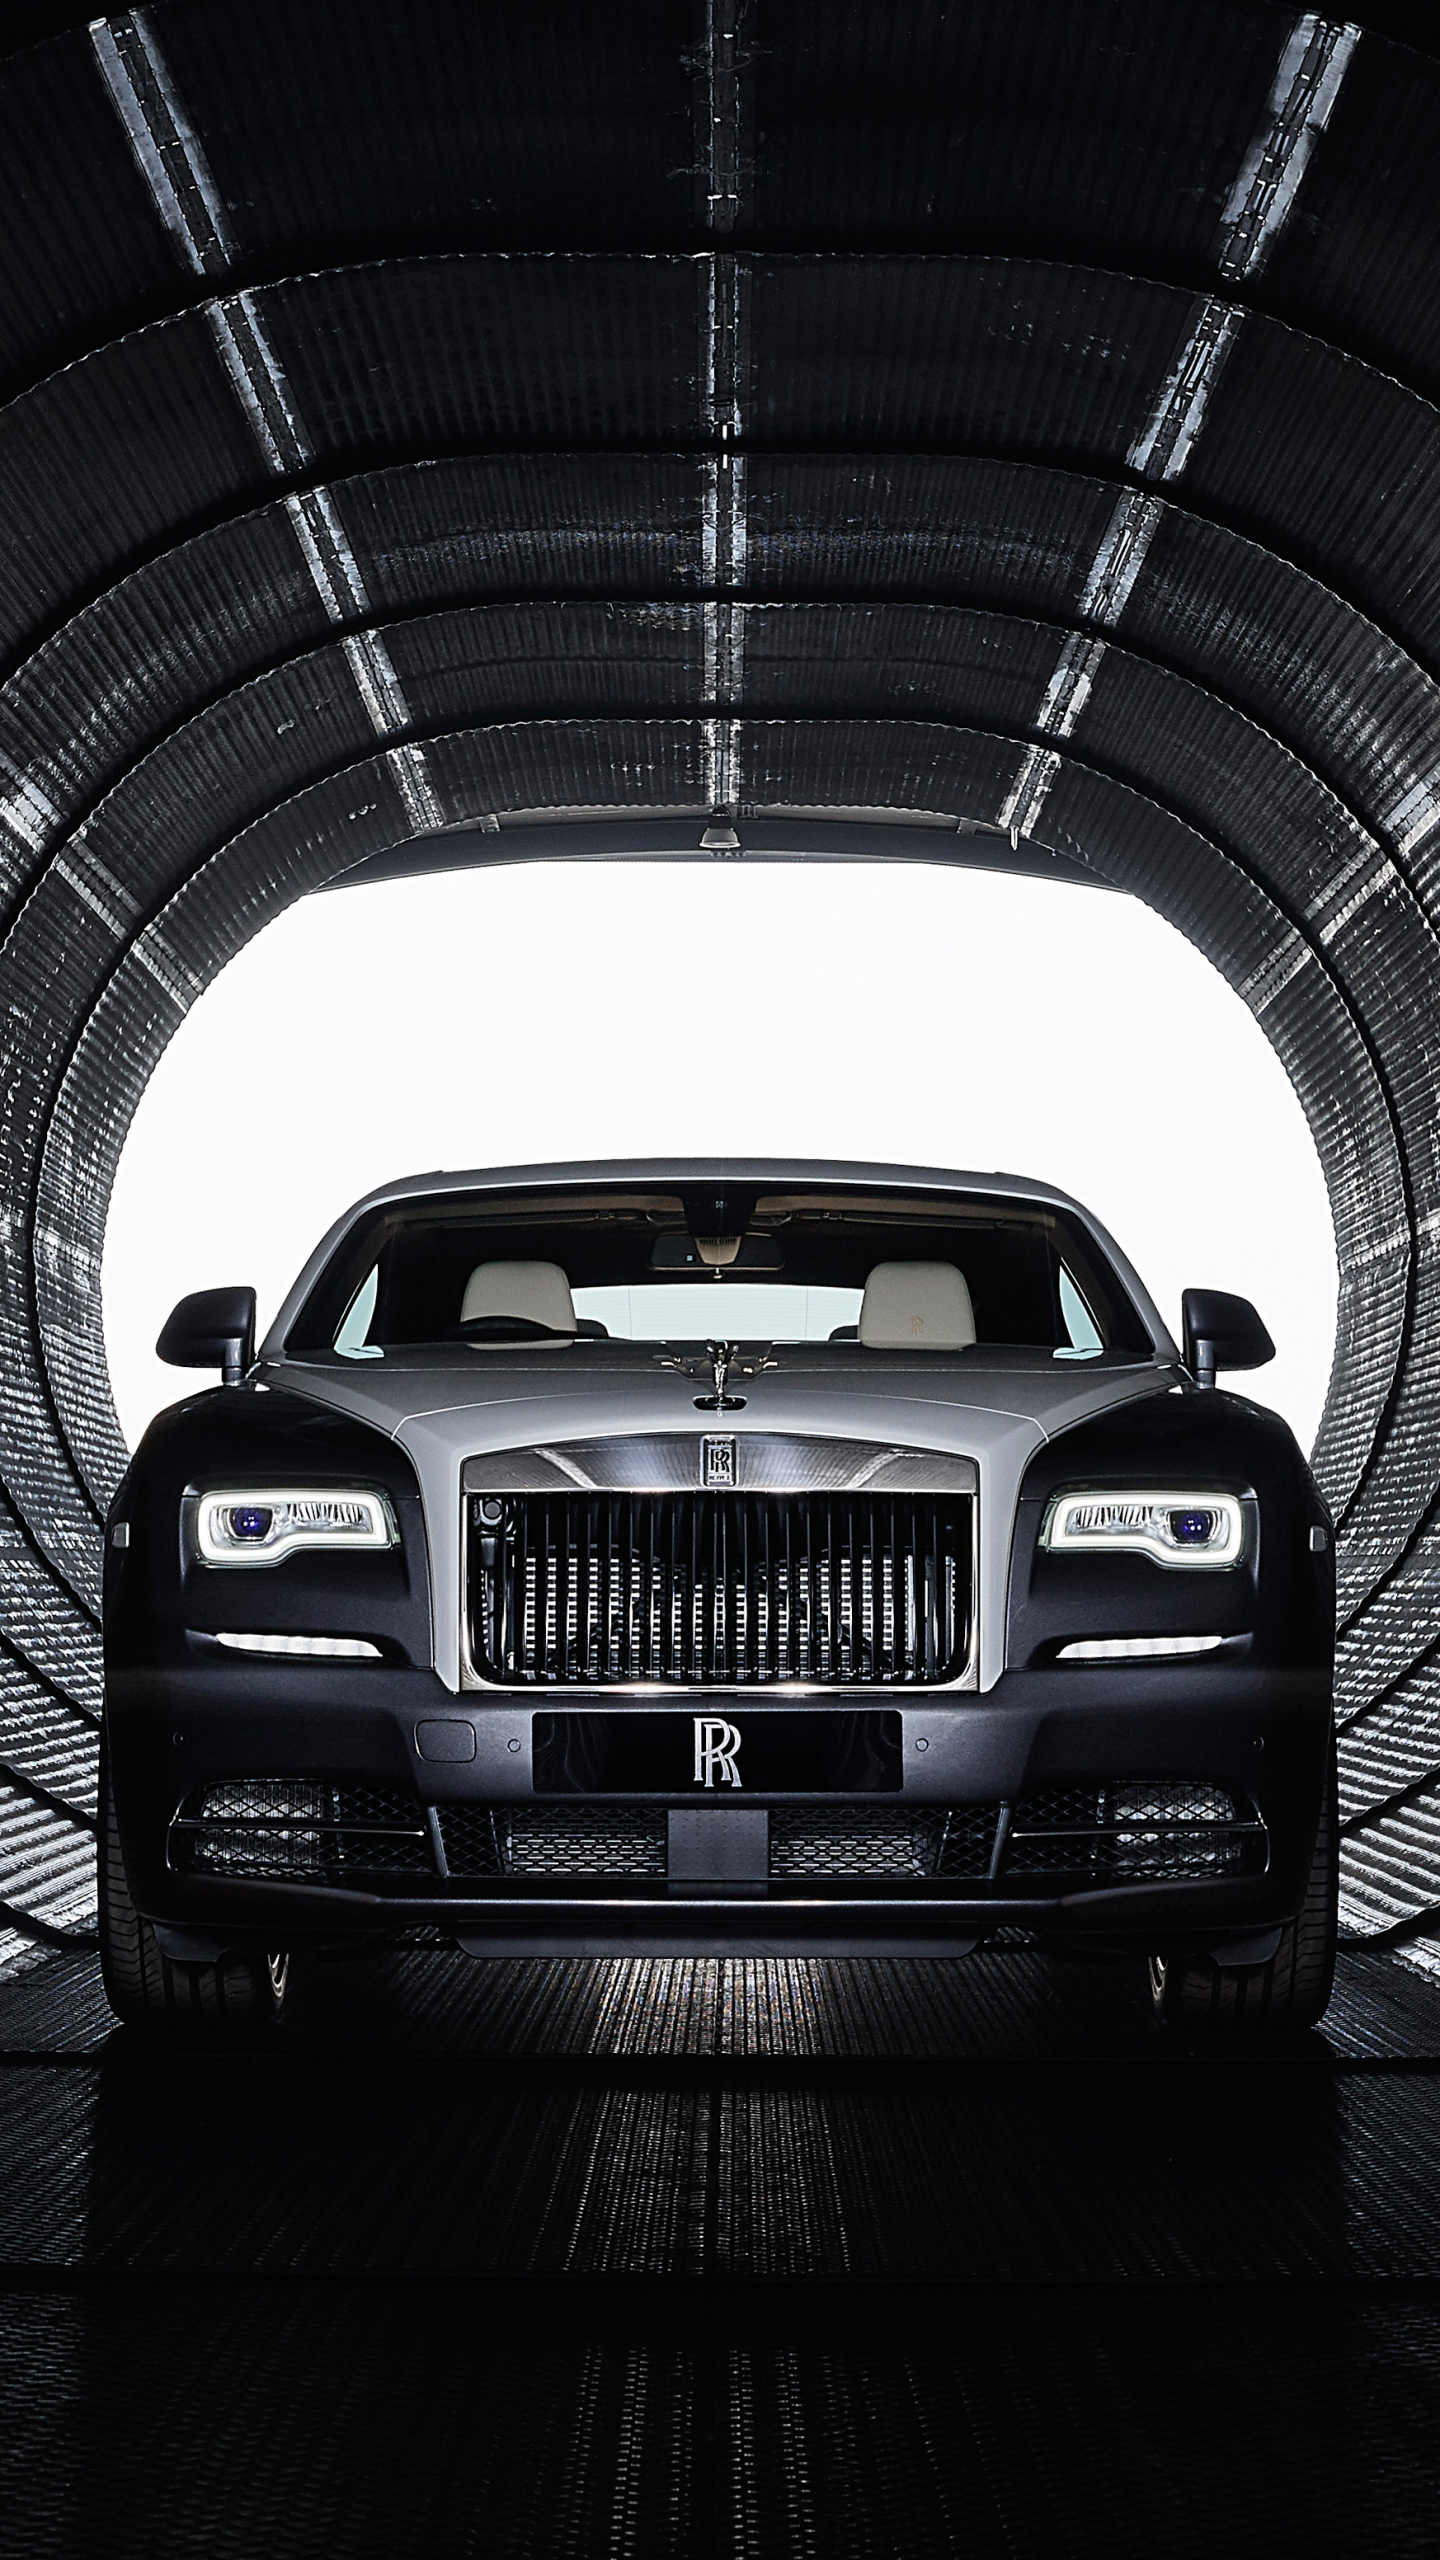 Descarga gratuita de fondo de pantalla para móvil de Rolls Royce, Rolls Royce Fantasma, Vehículos.